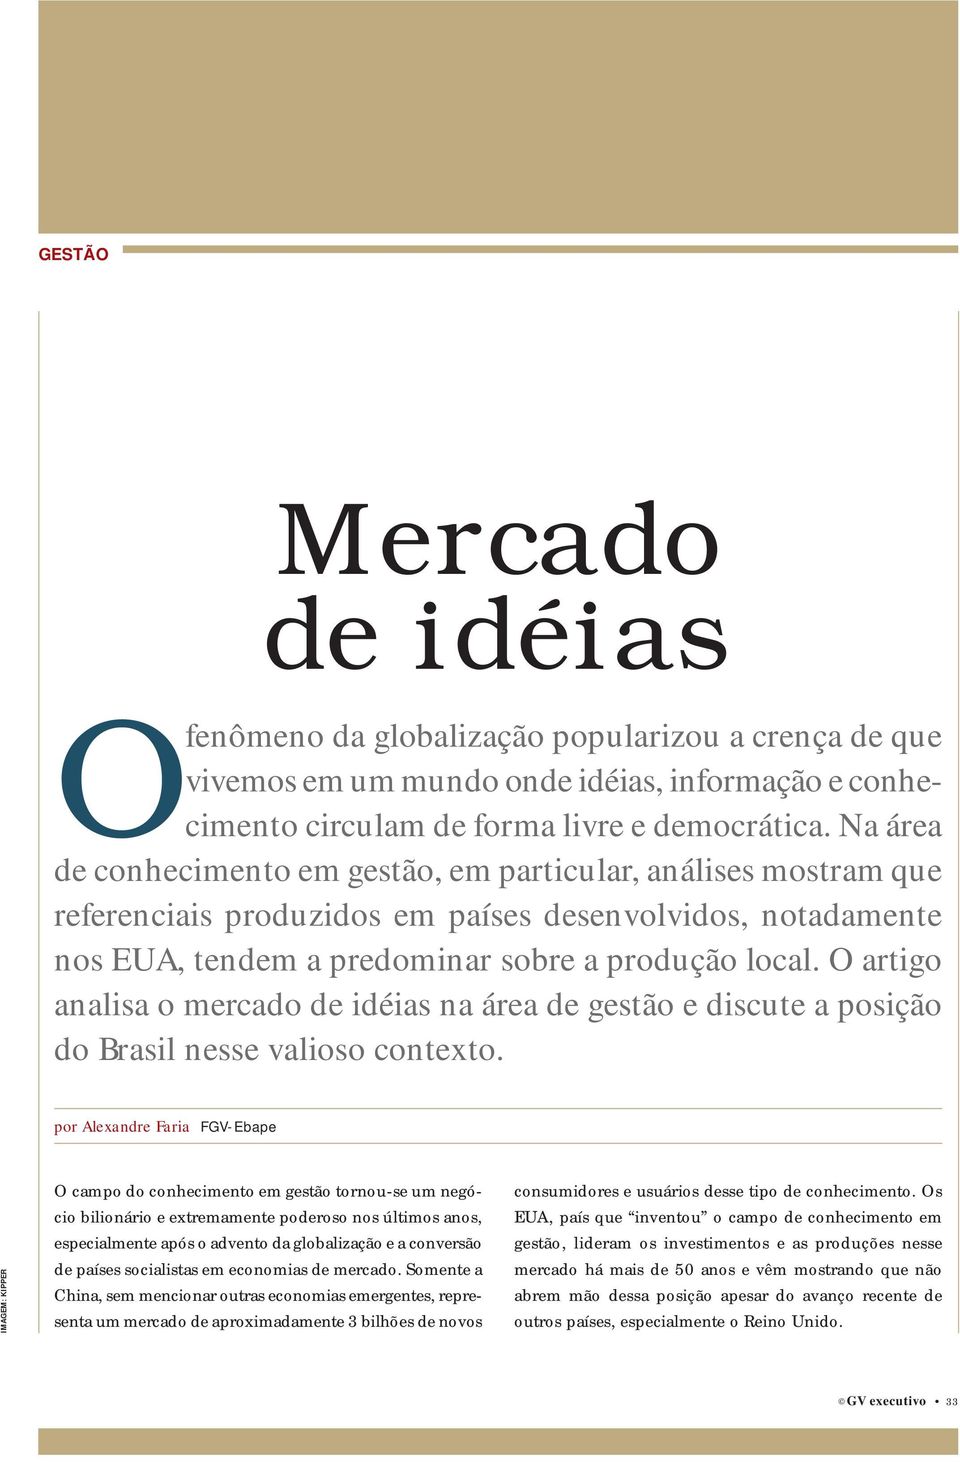 O artigo analisa o mercado de idéias na área de gestão e discute a posição do Brasil nesse valioso contexto.